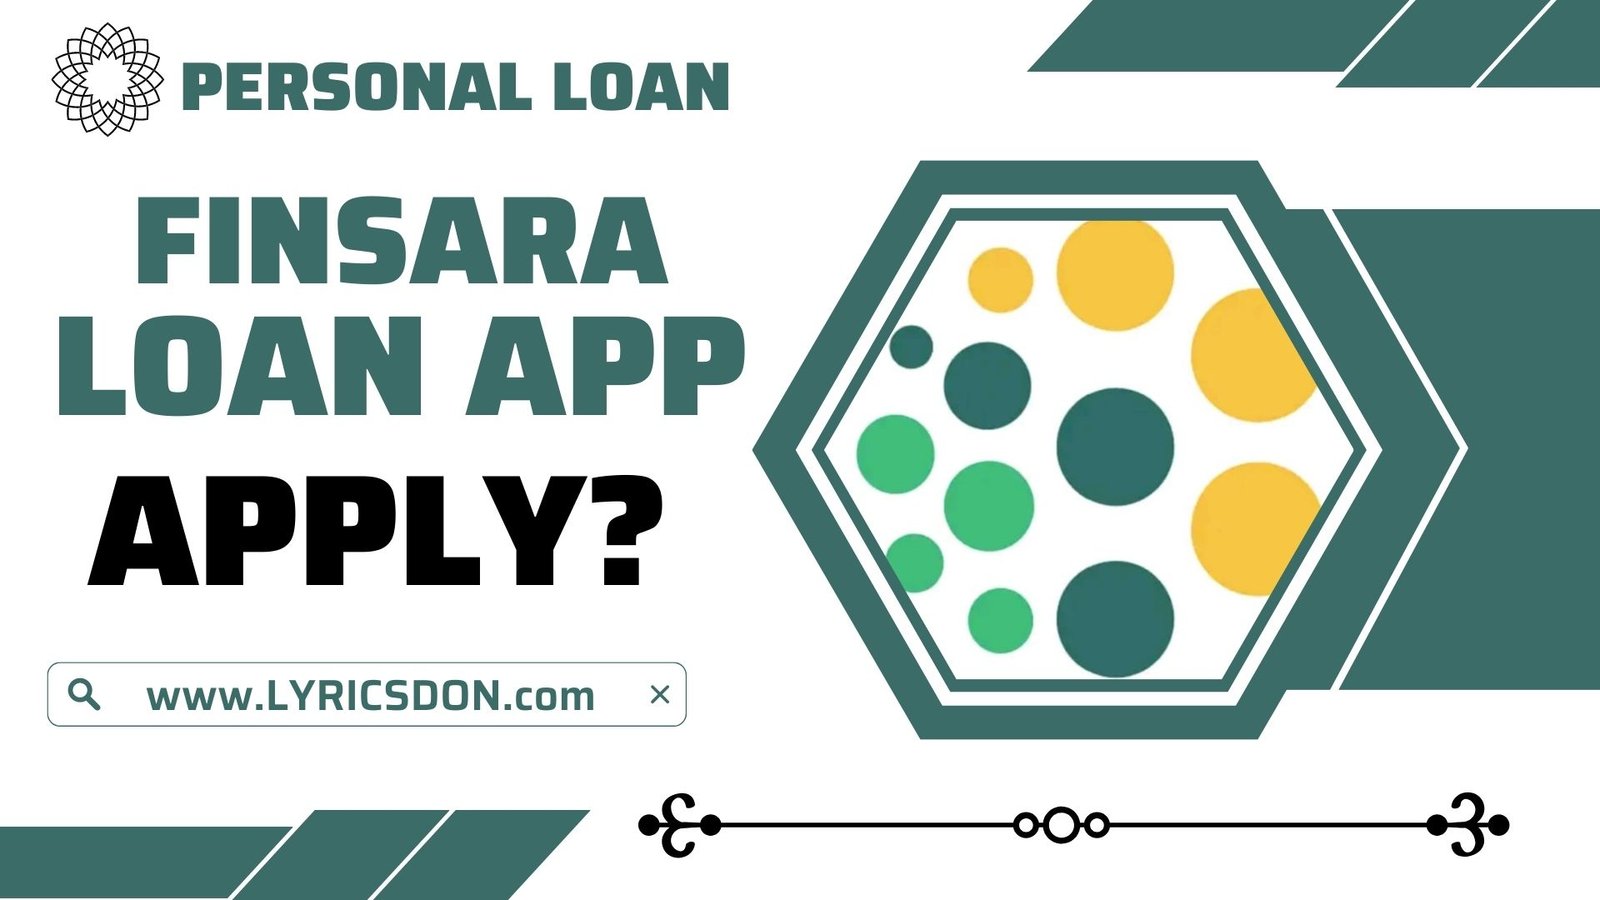 FINSARA Loan App से लोन कैसे लें?